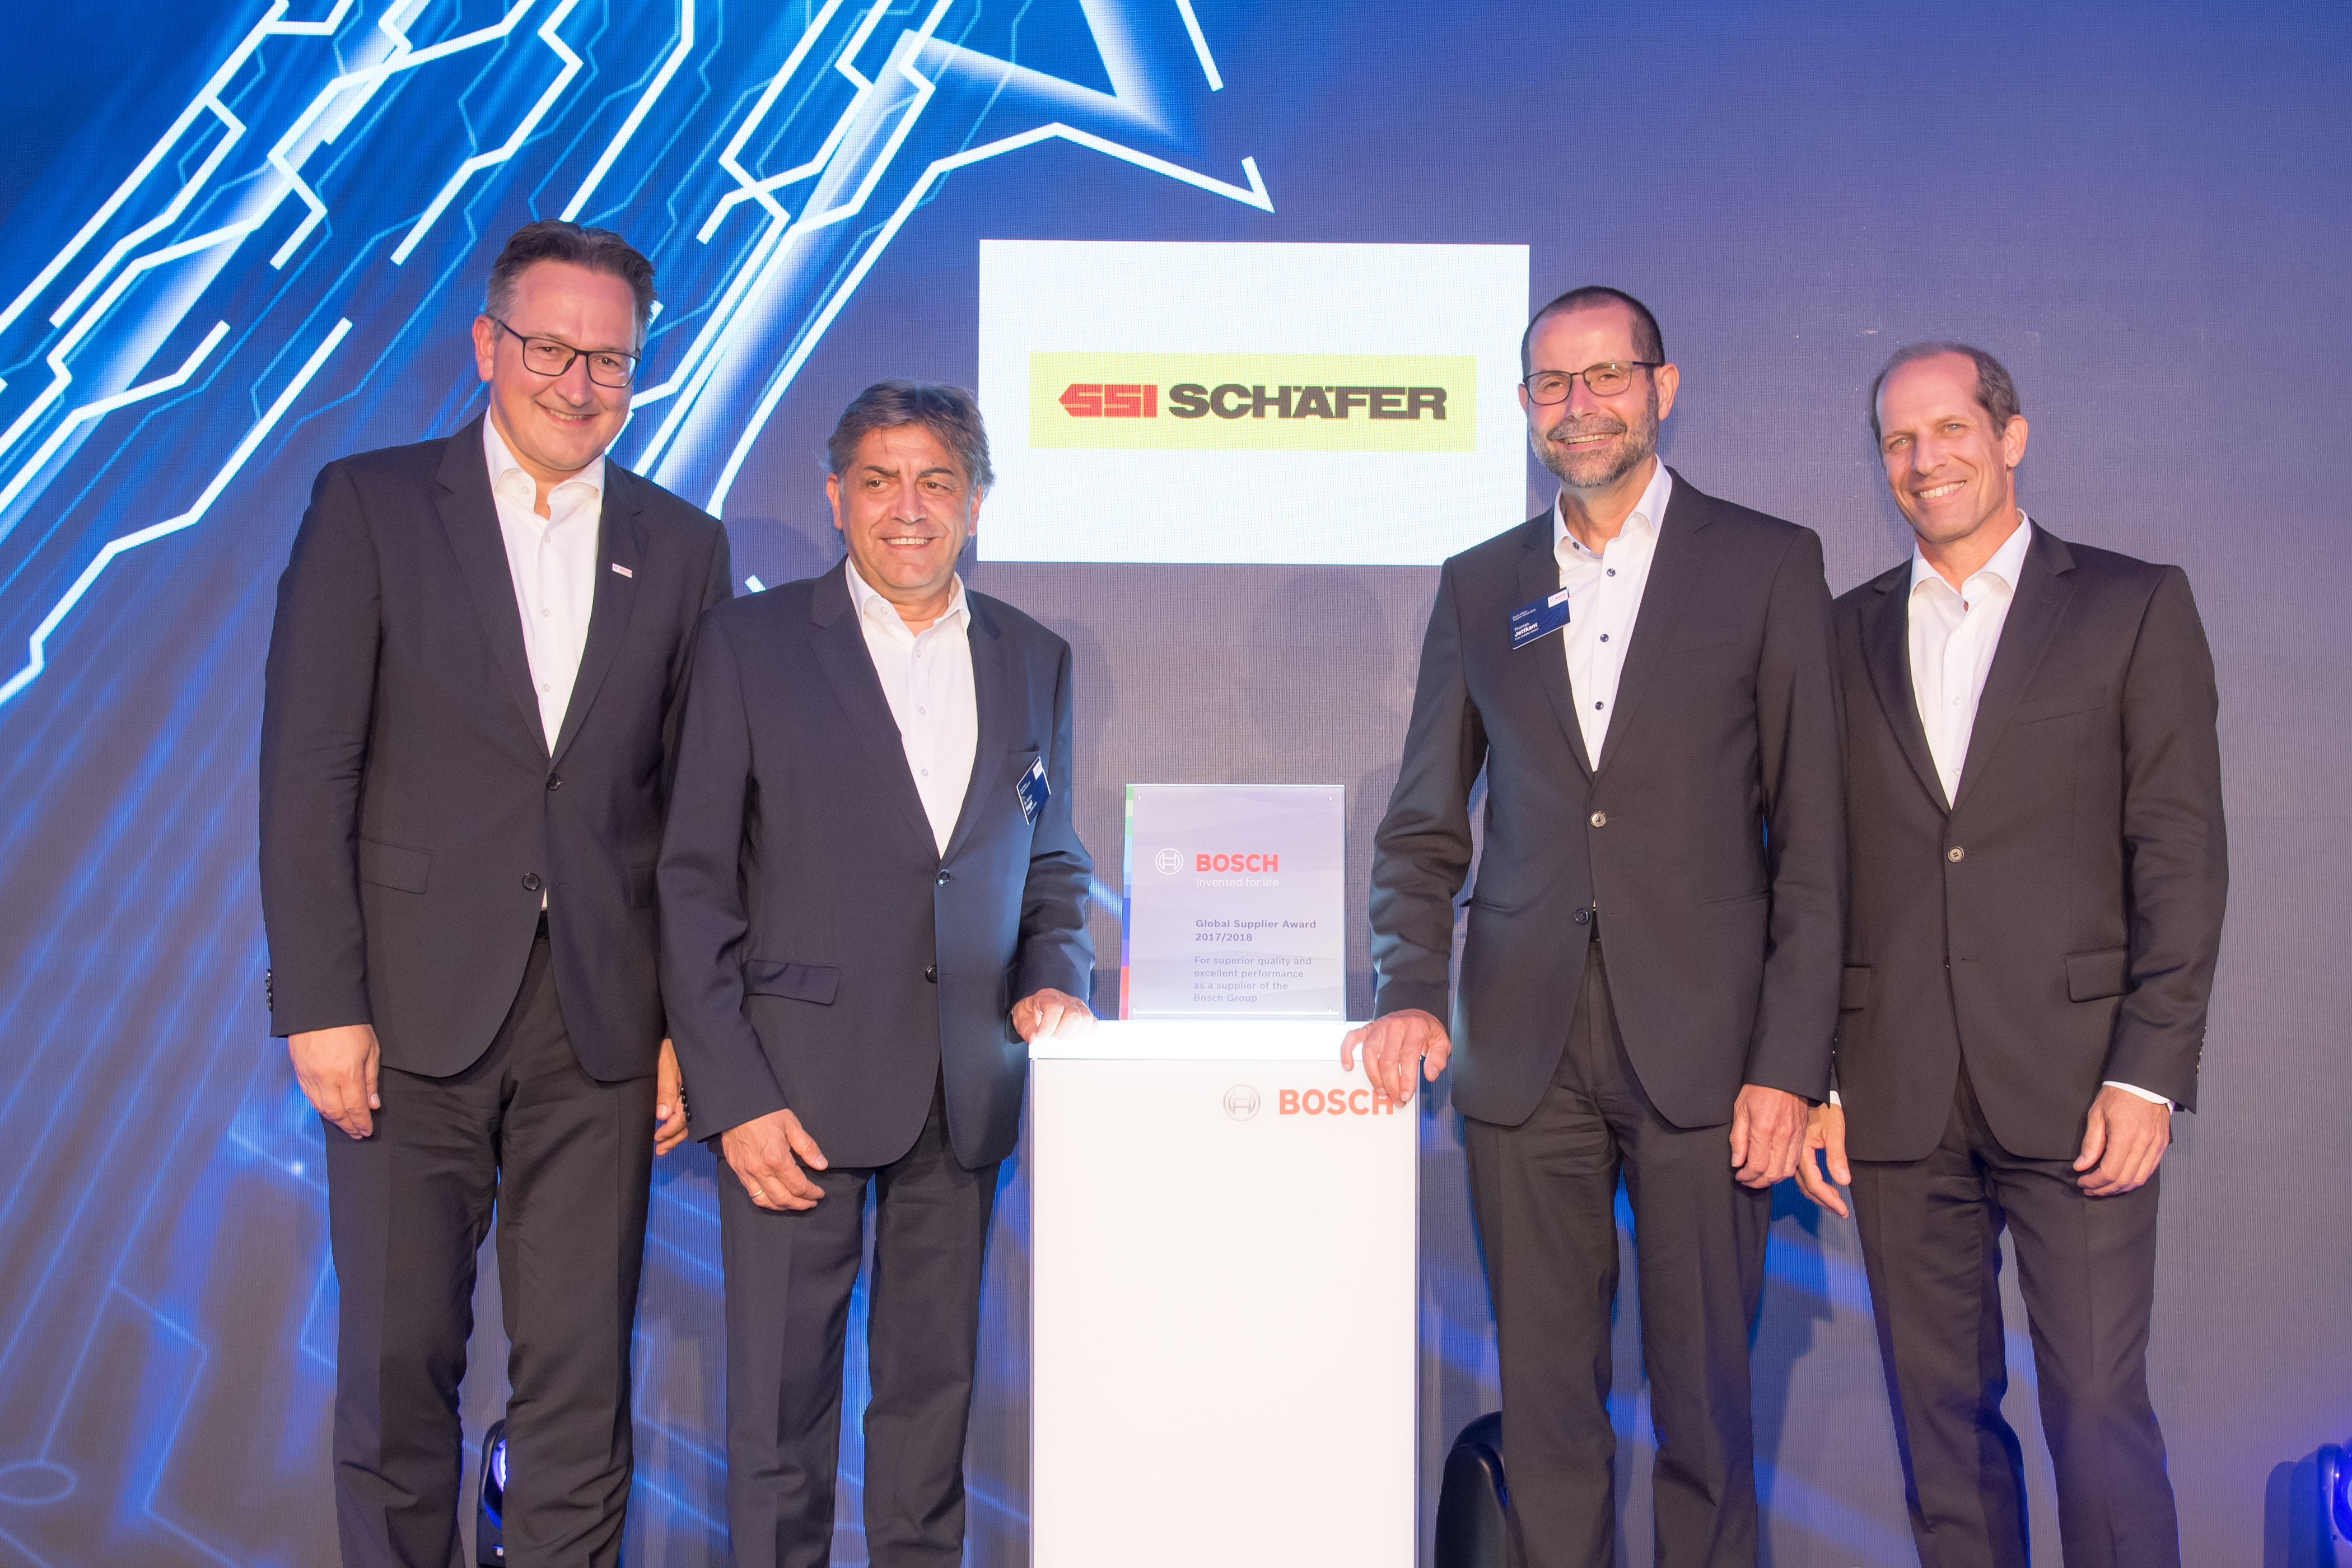 SSI_Schaefer_Bosch_Global_Supplier_Award_01